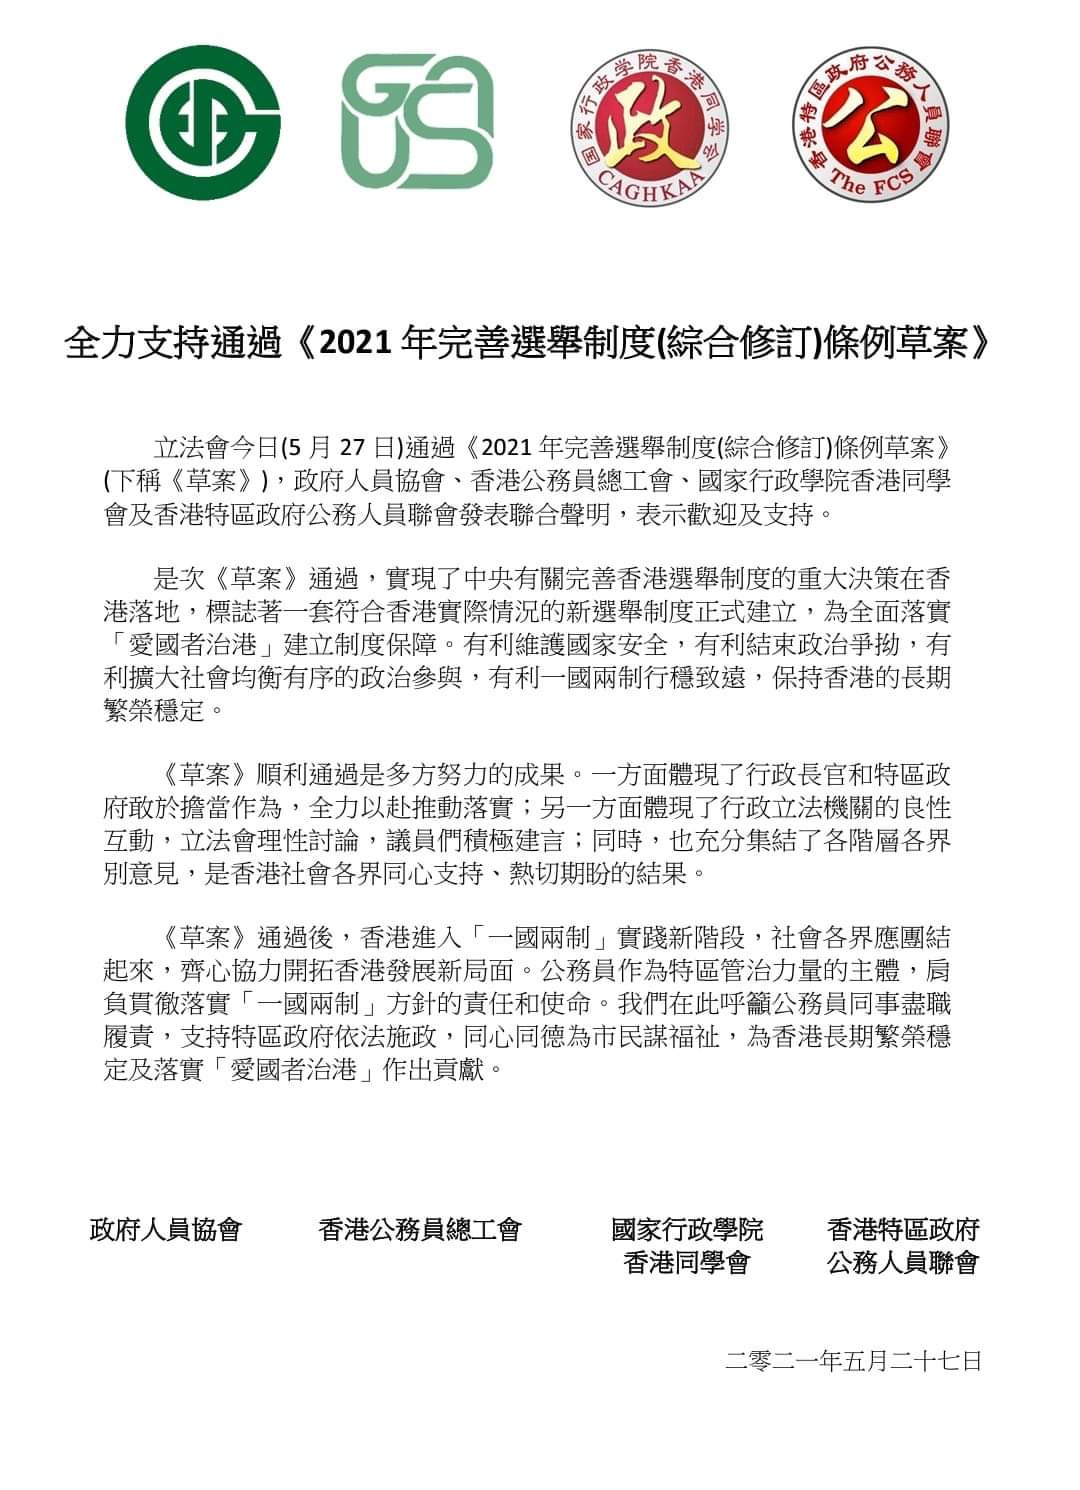 香港多個團體發表聯合聲明全力支持完善選舉制度條例草案的通過-圖1